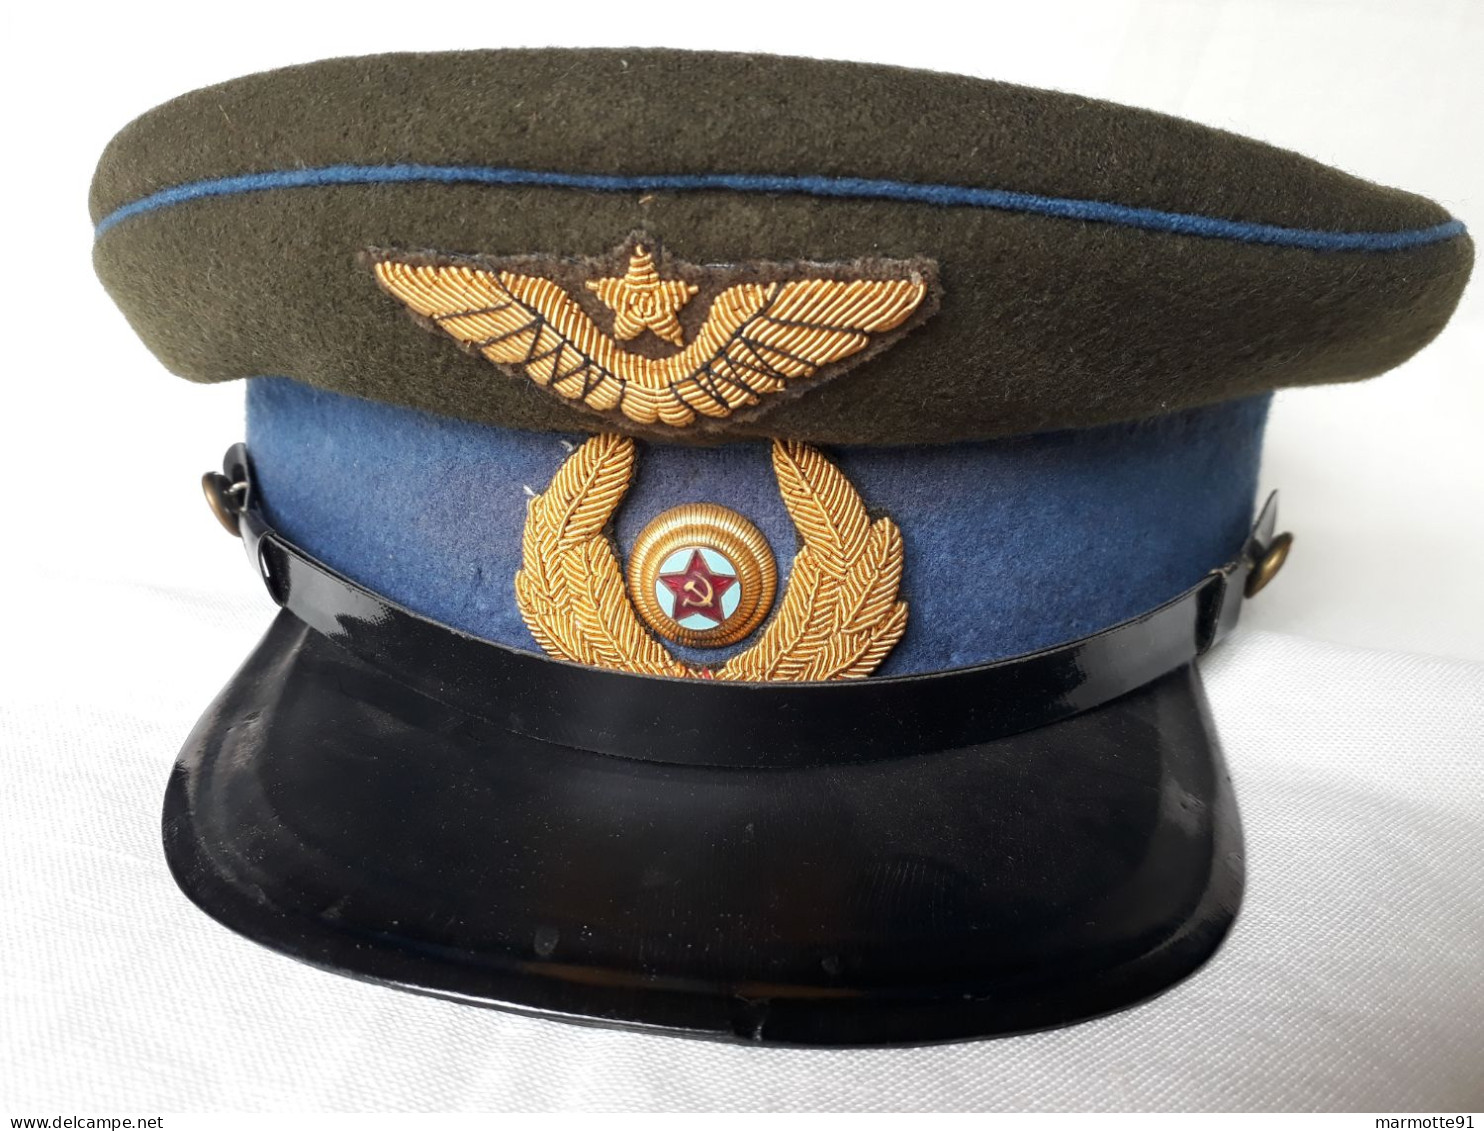 CASQUETTE OFFICIER SOVIETIQUE AVIATION PILOTE ARMEE ROUGE WW2 SOVIET PEAKED CAP PILOT 1943 AIR FORCE - Casques & Coiffures